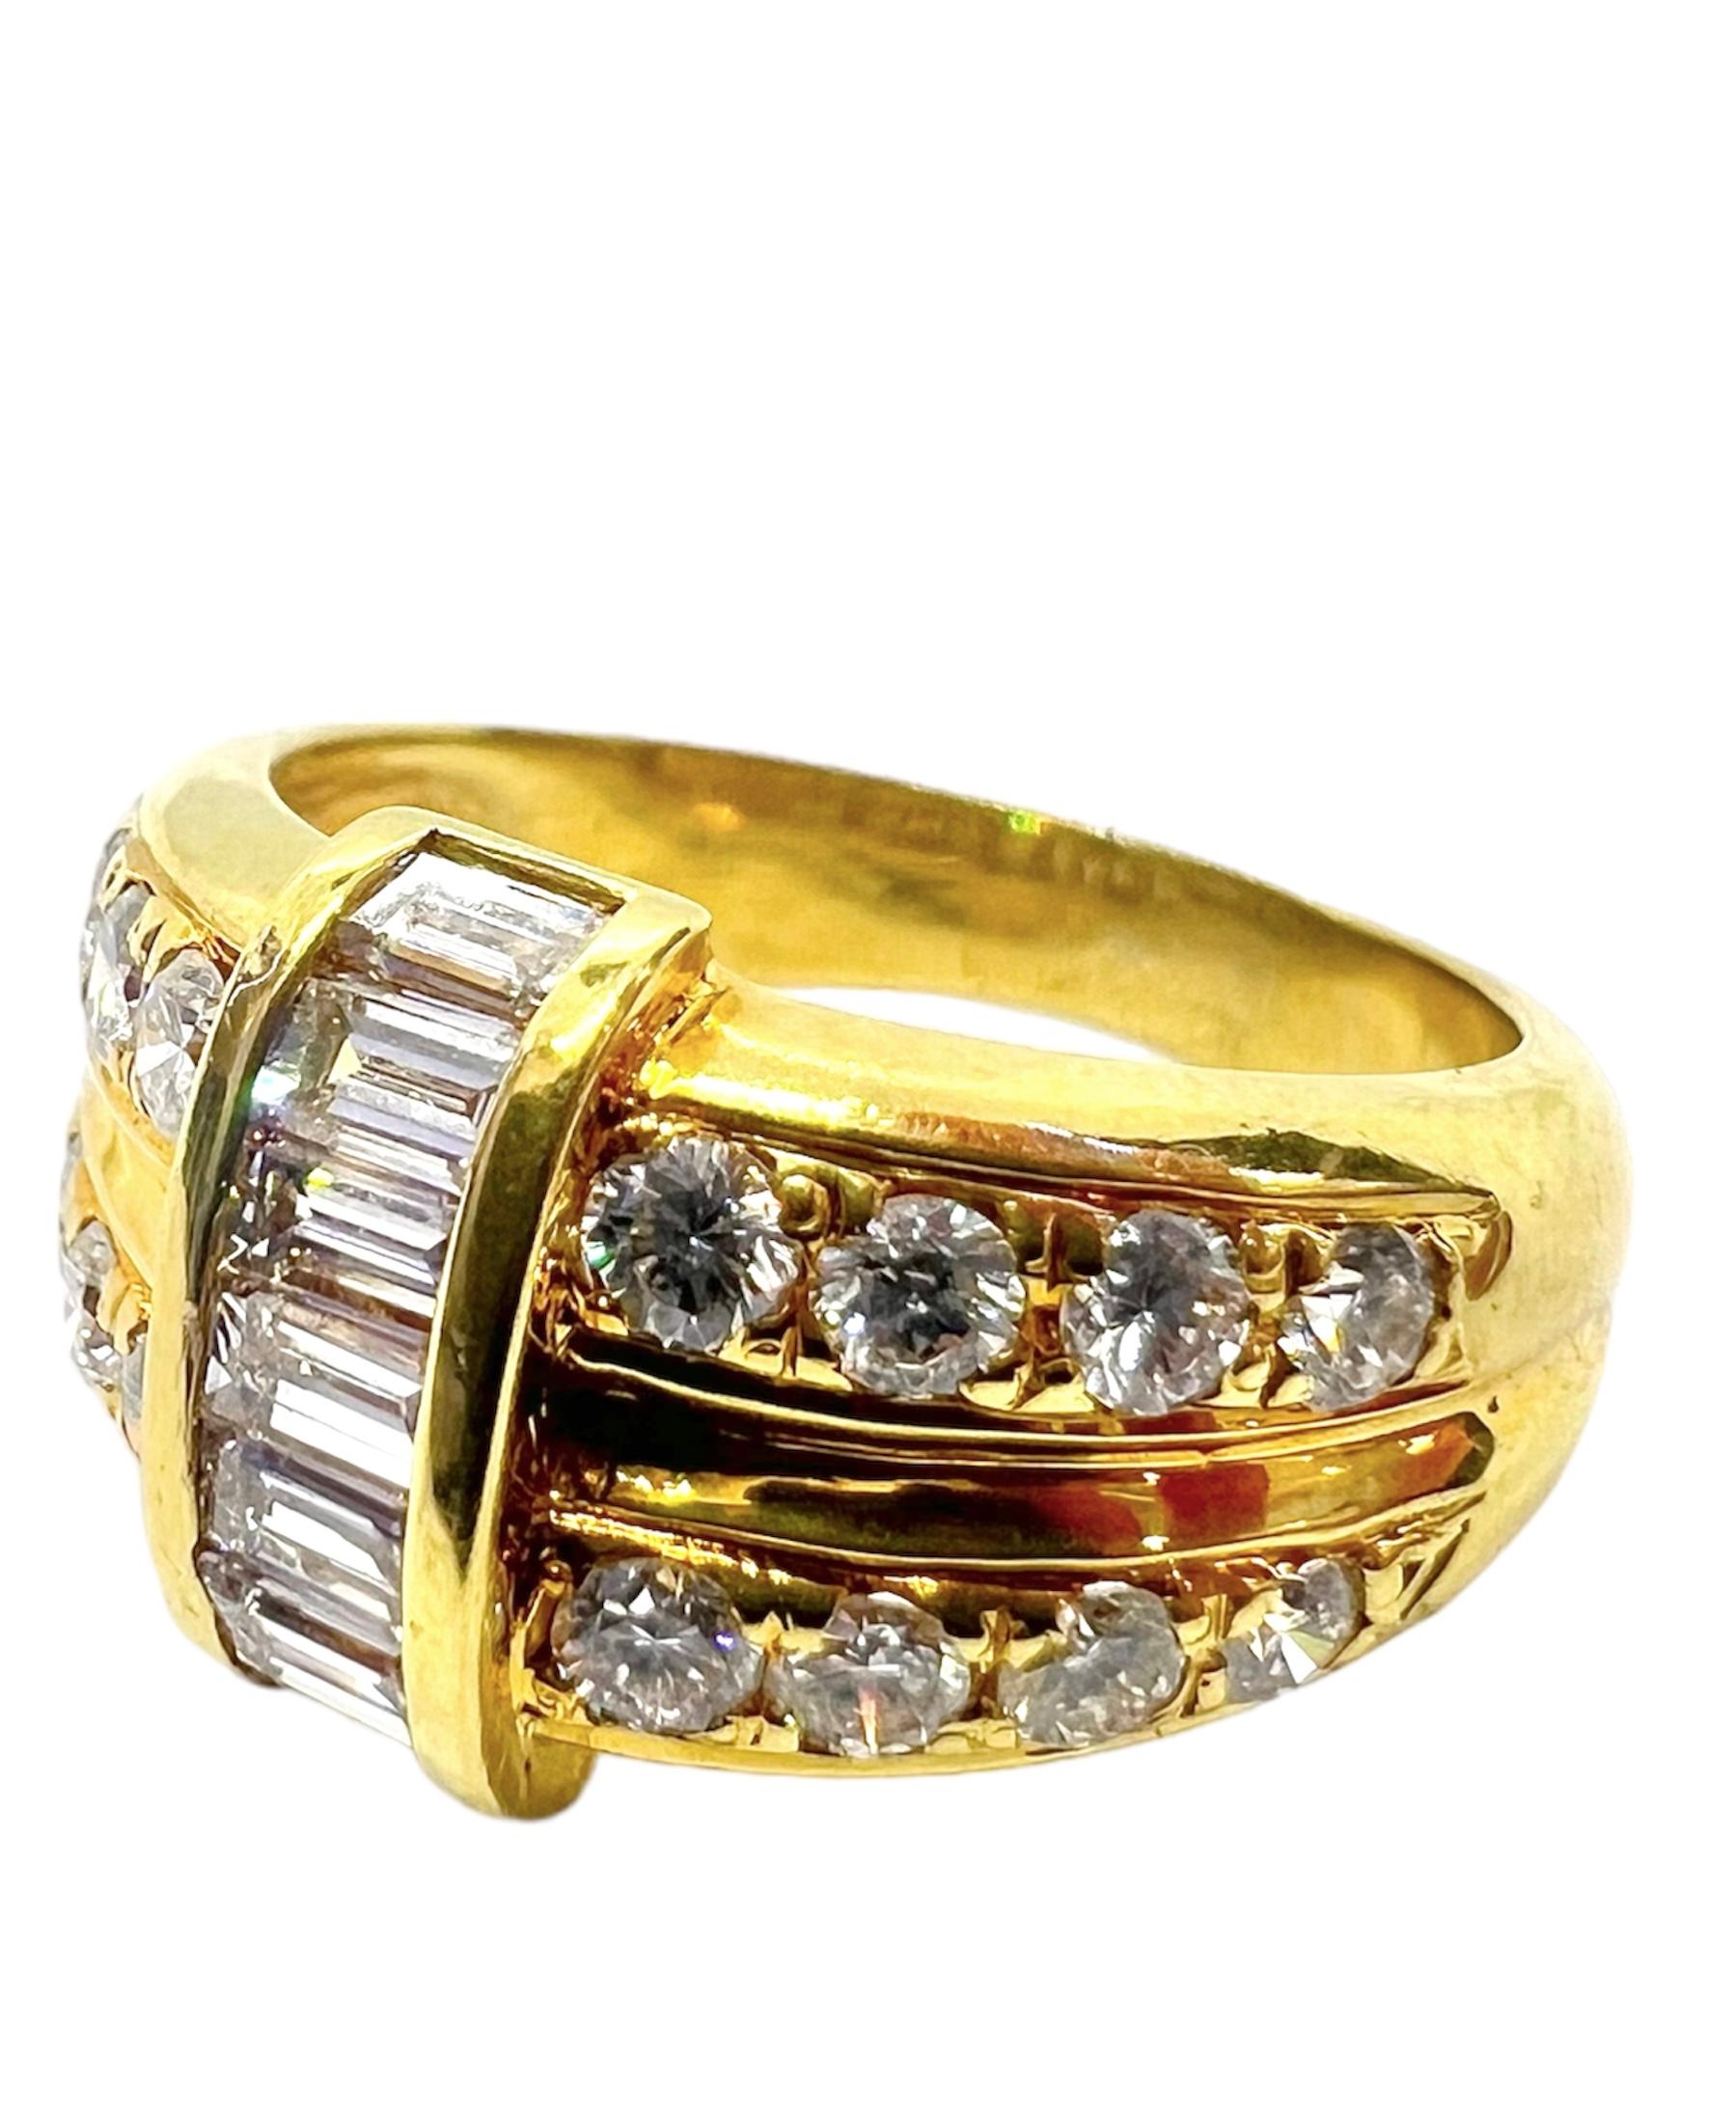 Ring aus 18 Karat Gelbgold mit kleinen runden Diamanten und Diamanten im Baguetteschliff.

Sophia D von Joseph Dardashti LTD ist seit 35 Jahren weltweit bekannt und lässt sich vom klassischen Art-Déco-Design inspirieren, das mit modernen